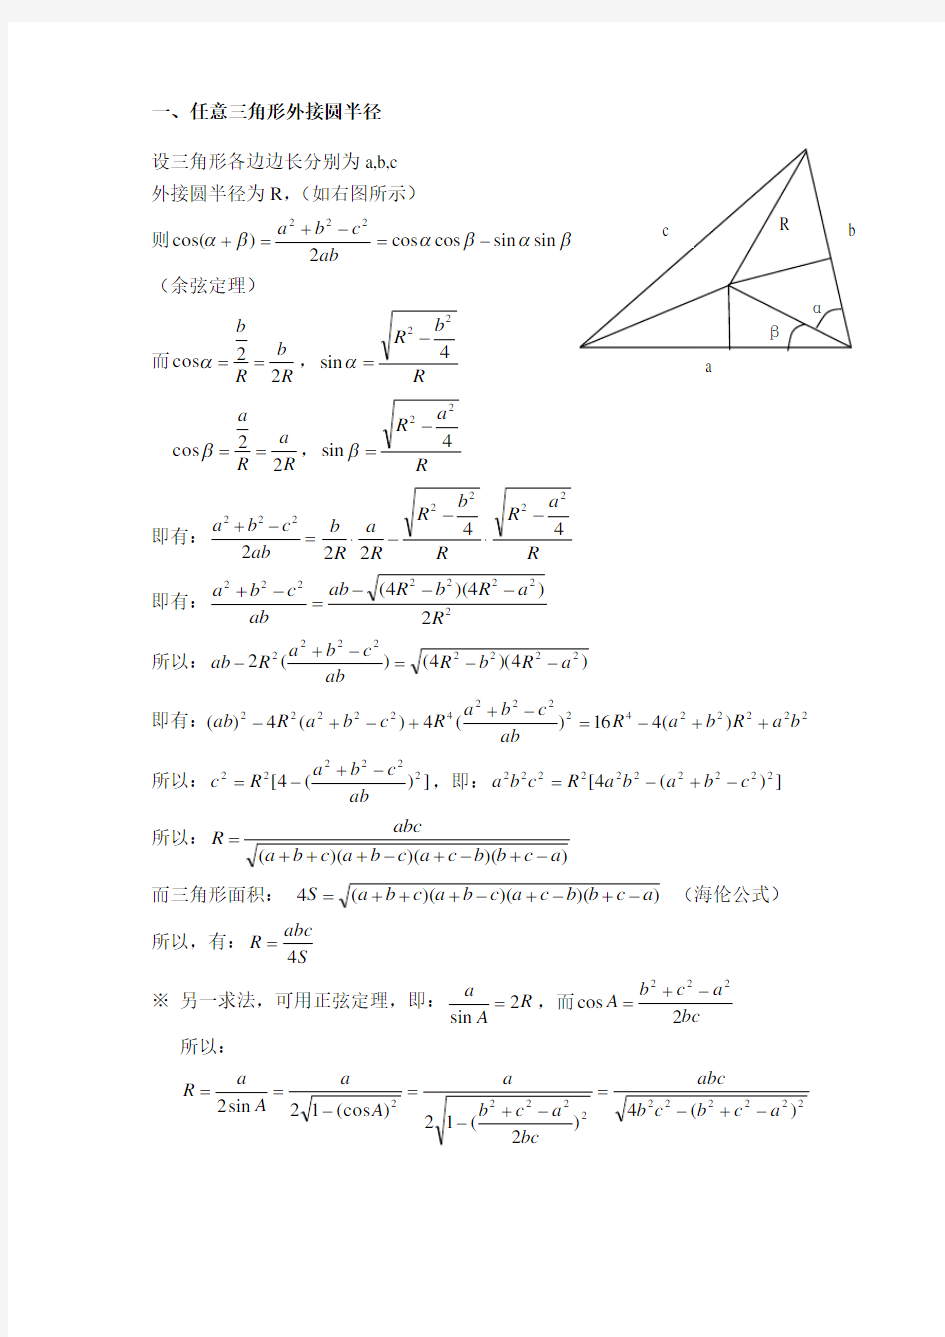 任意三角形外接圆半径、内切圆半径的求法及通用公式